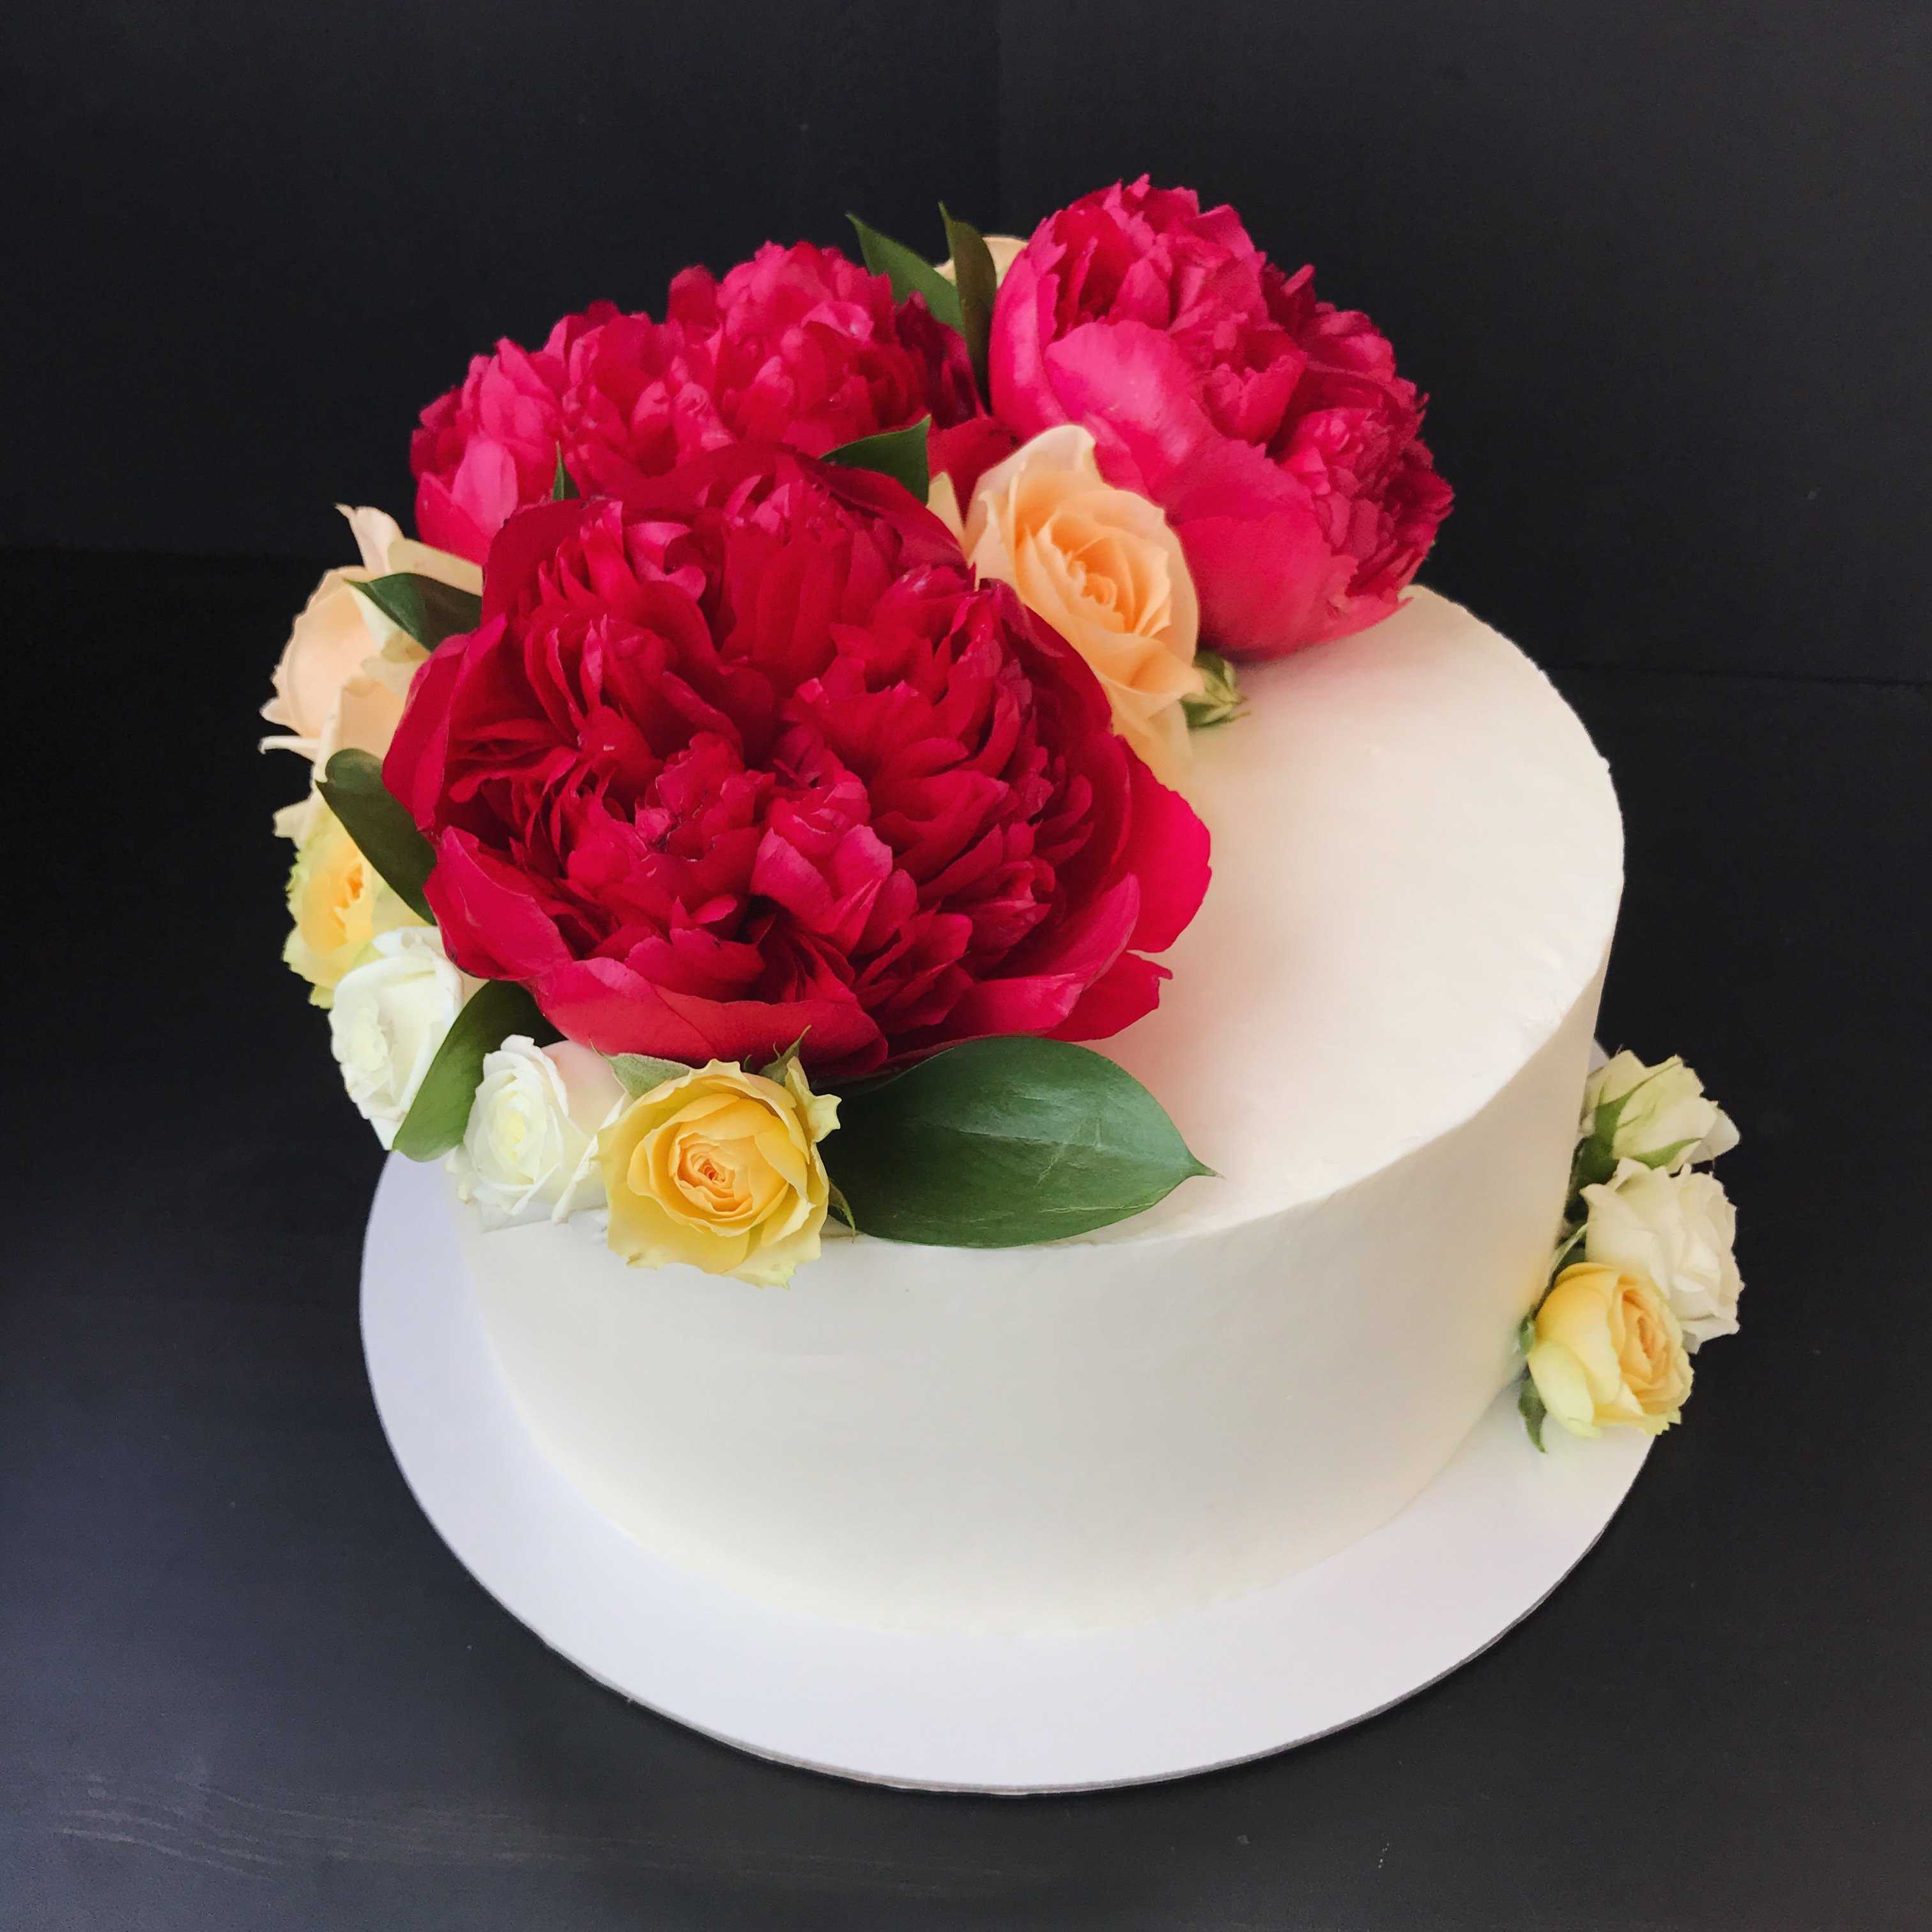 Живые цветы и как их правильно подготовить для декора тортов!